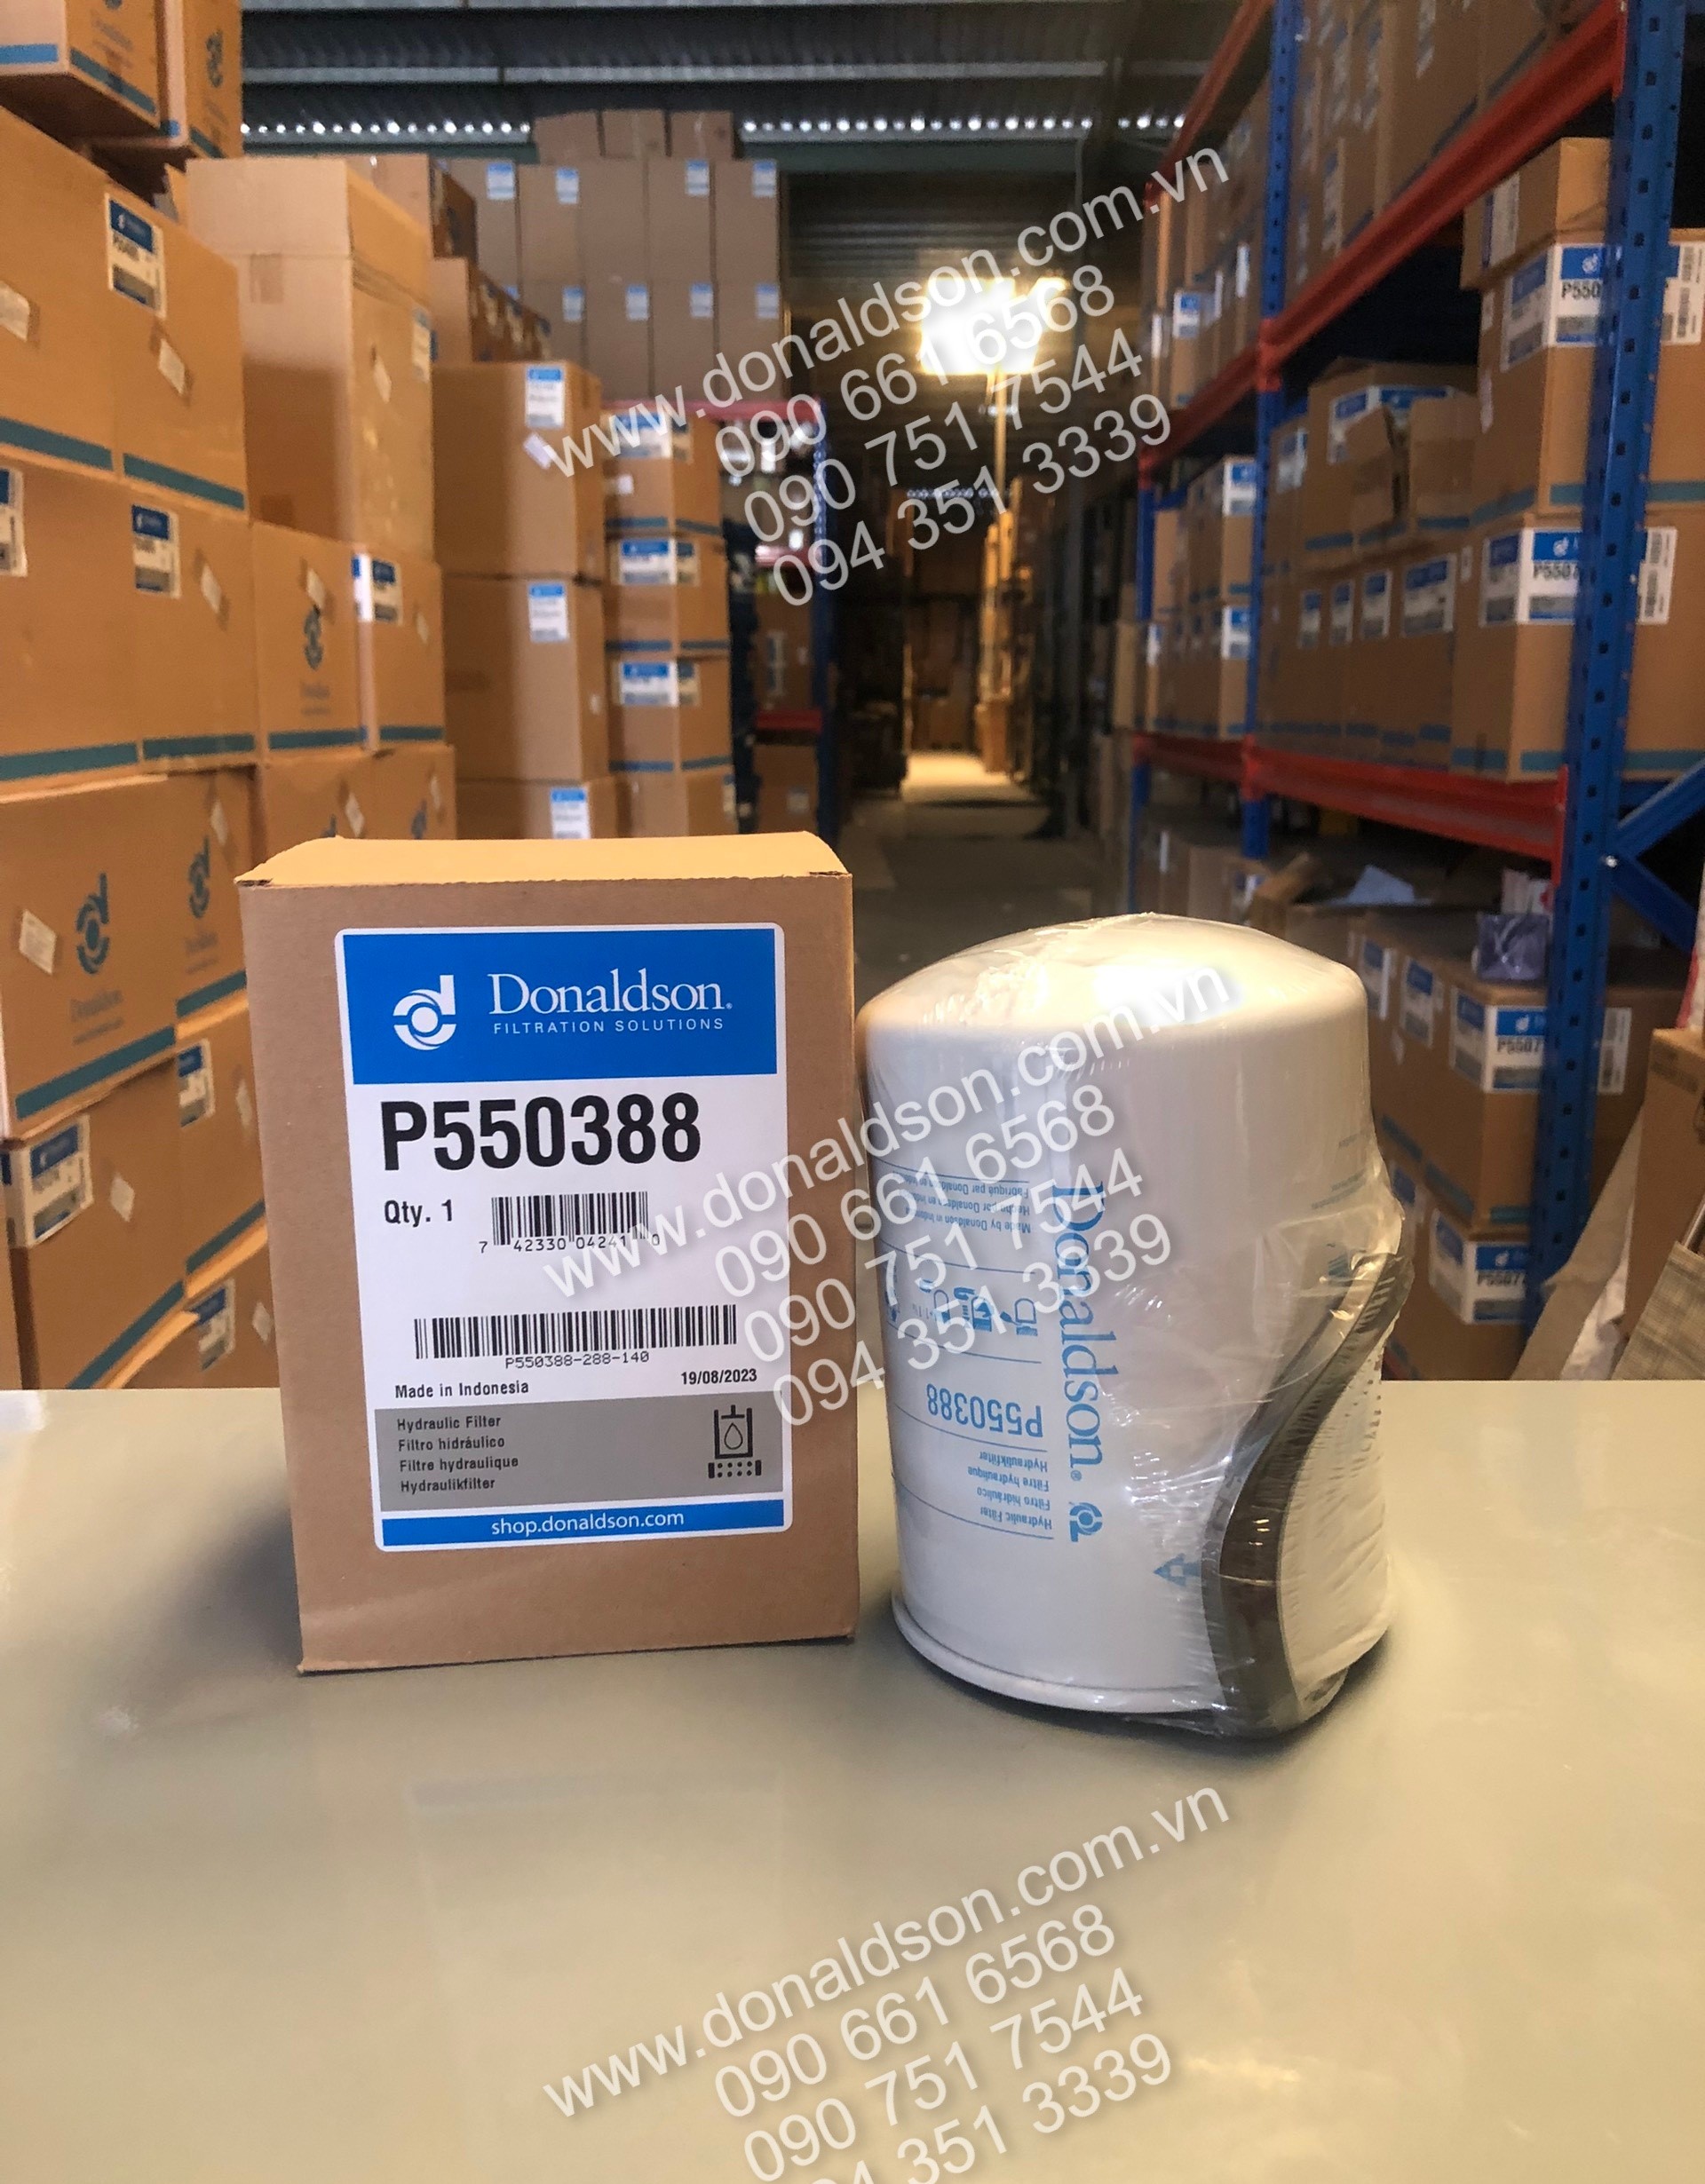 Donaldson P550388 - Đại lý lọc Donaldson tại Việt Nam – Donaldson Filter Distributor in Vietnam